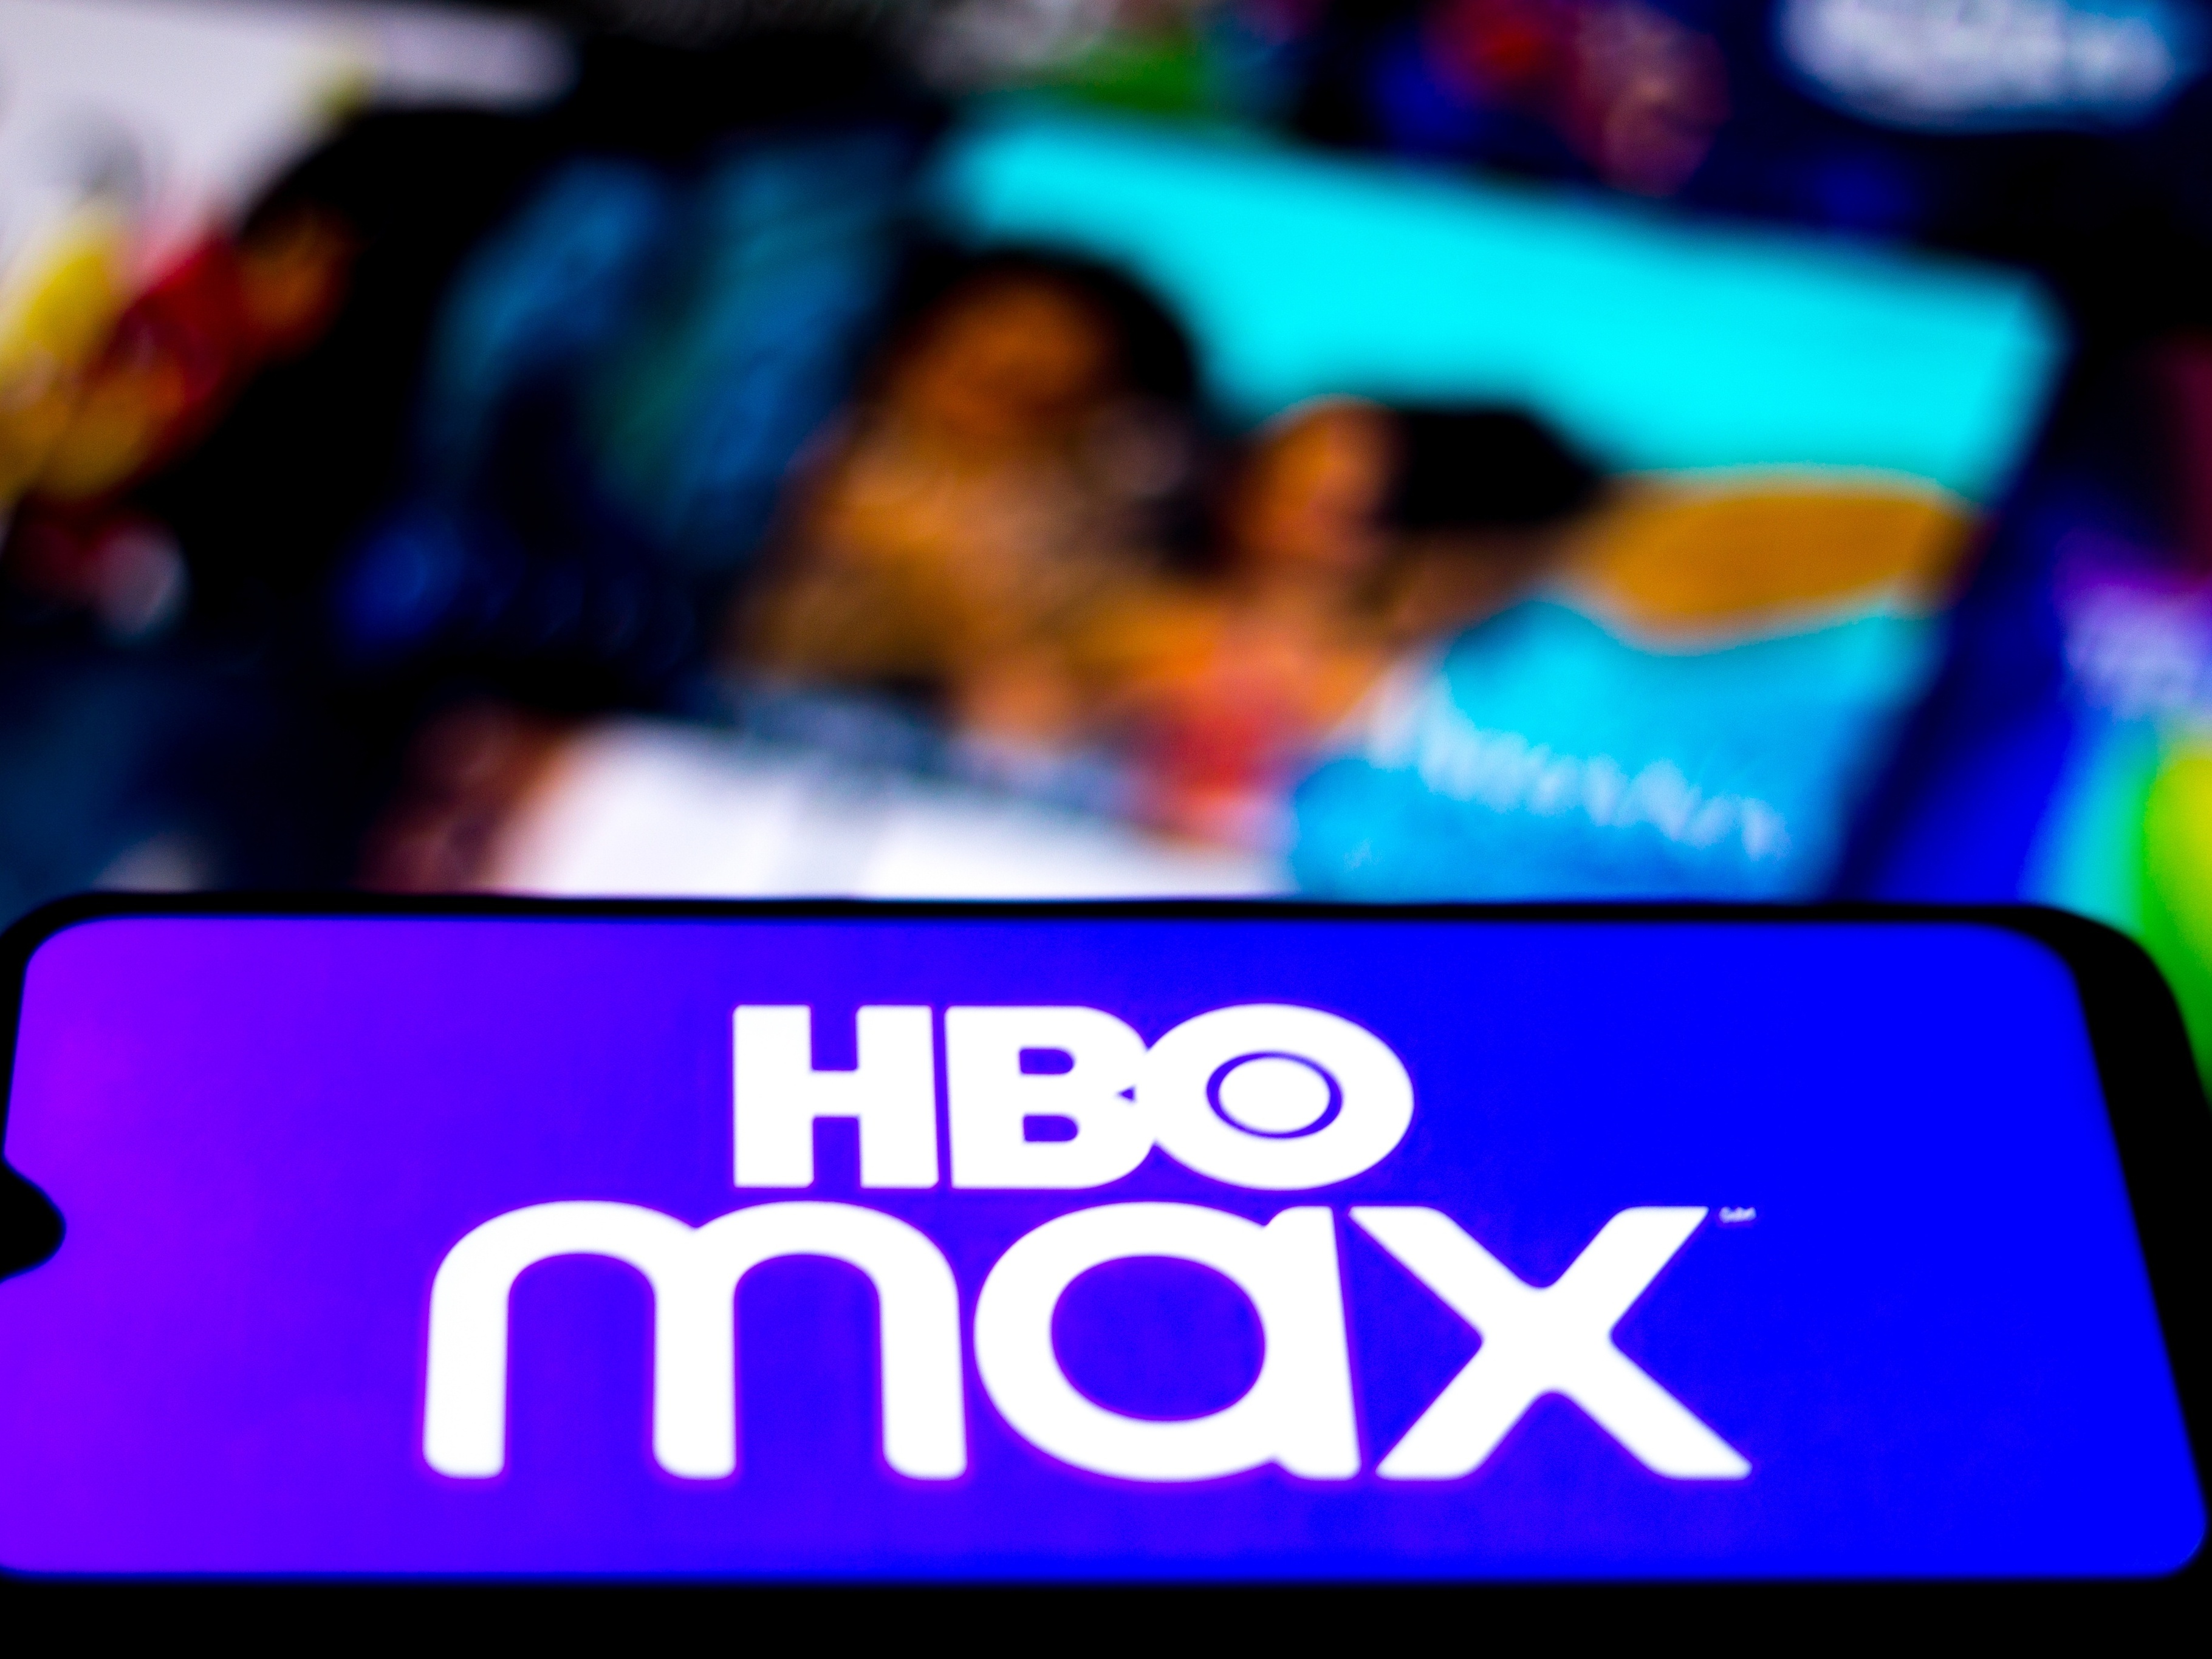 HBO Max Brasil on X: Atenção pra lista do que chegou nessa semana na HBO  Max 💃  / X